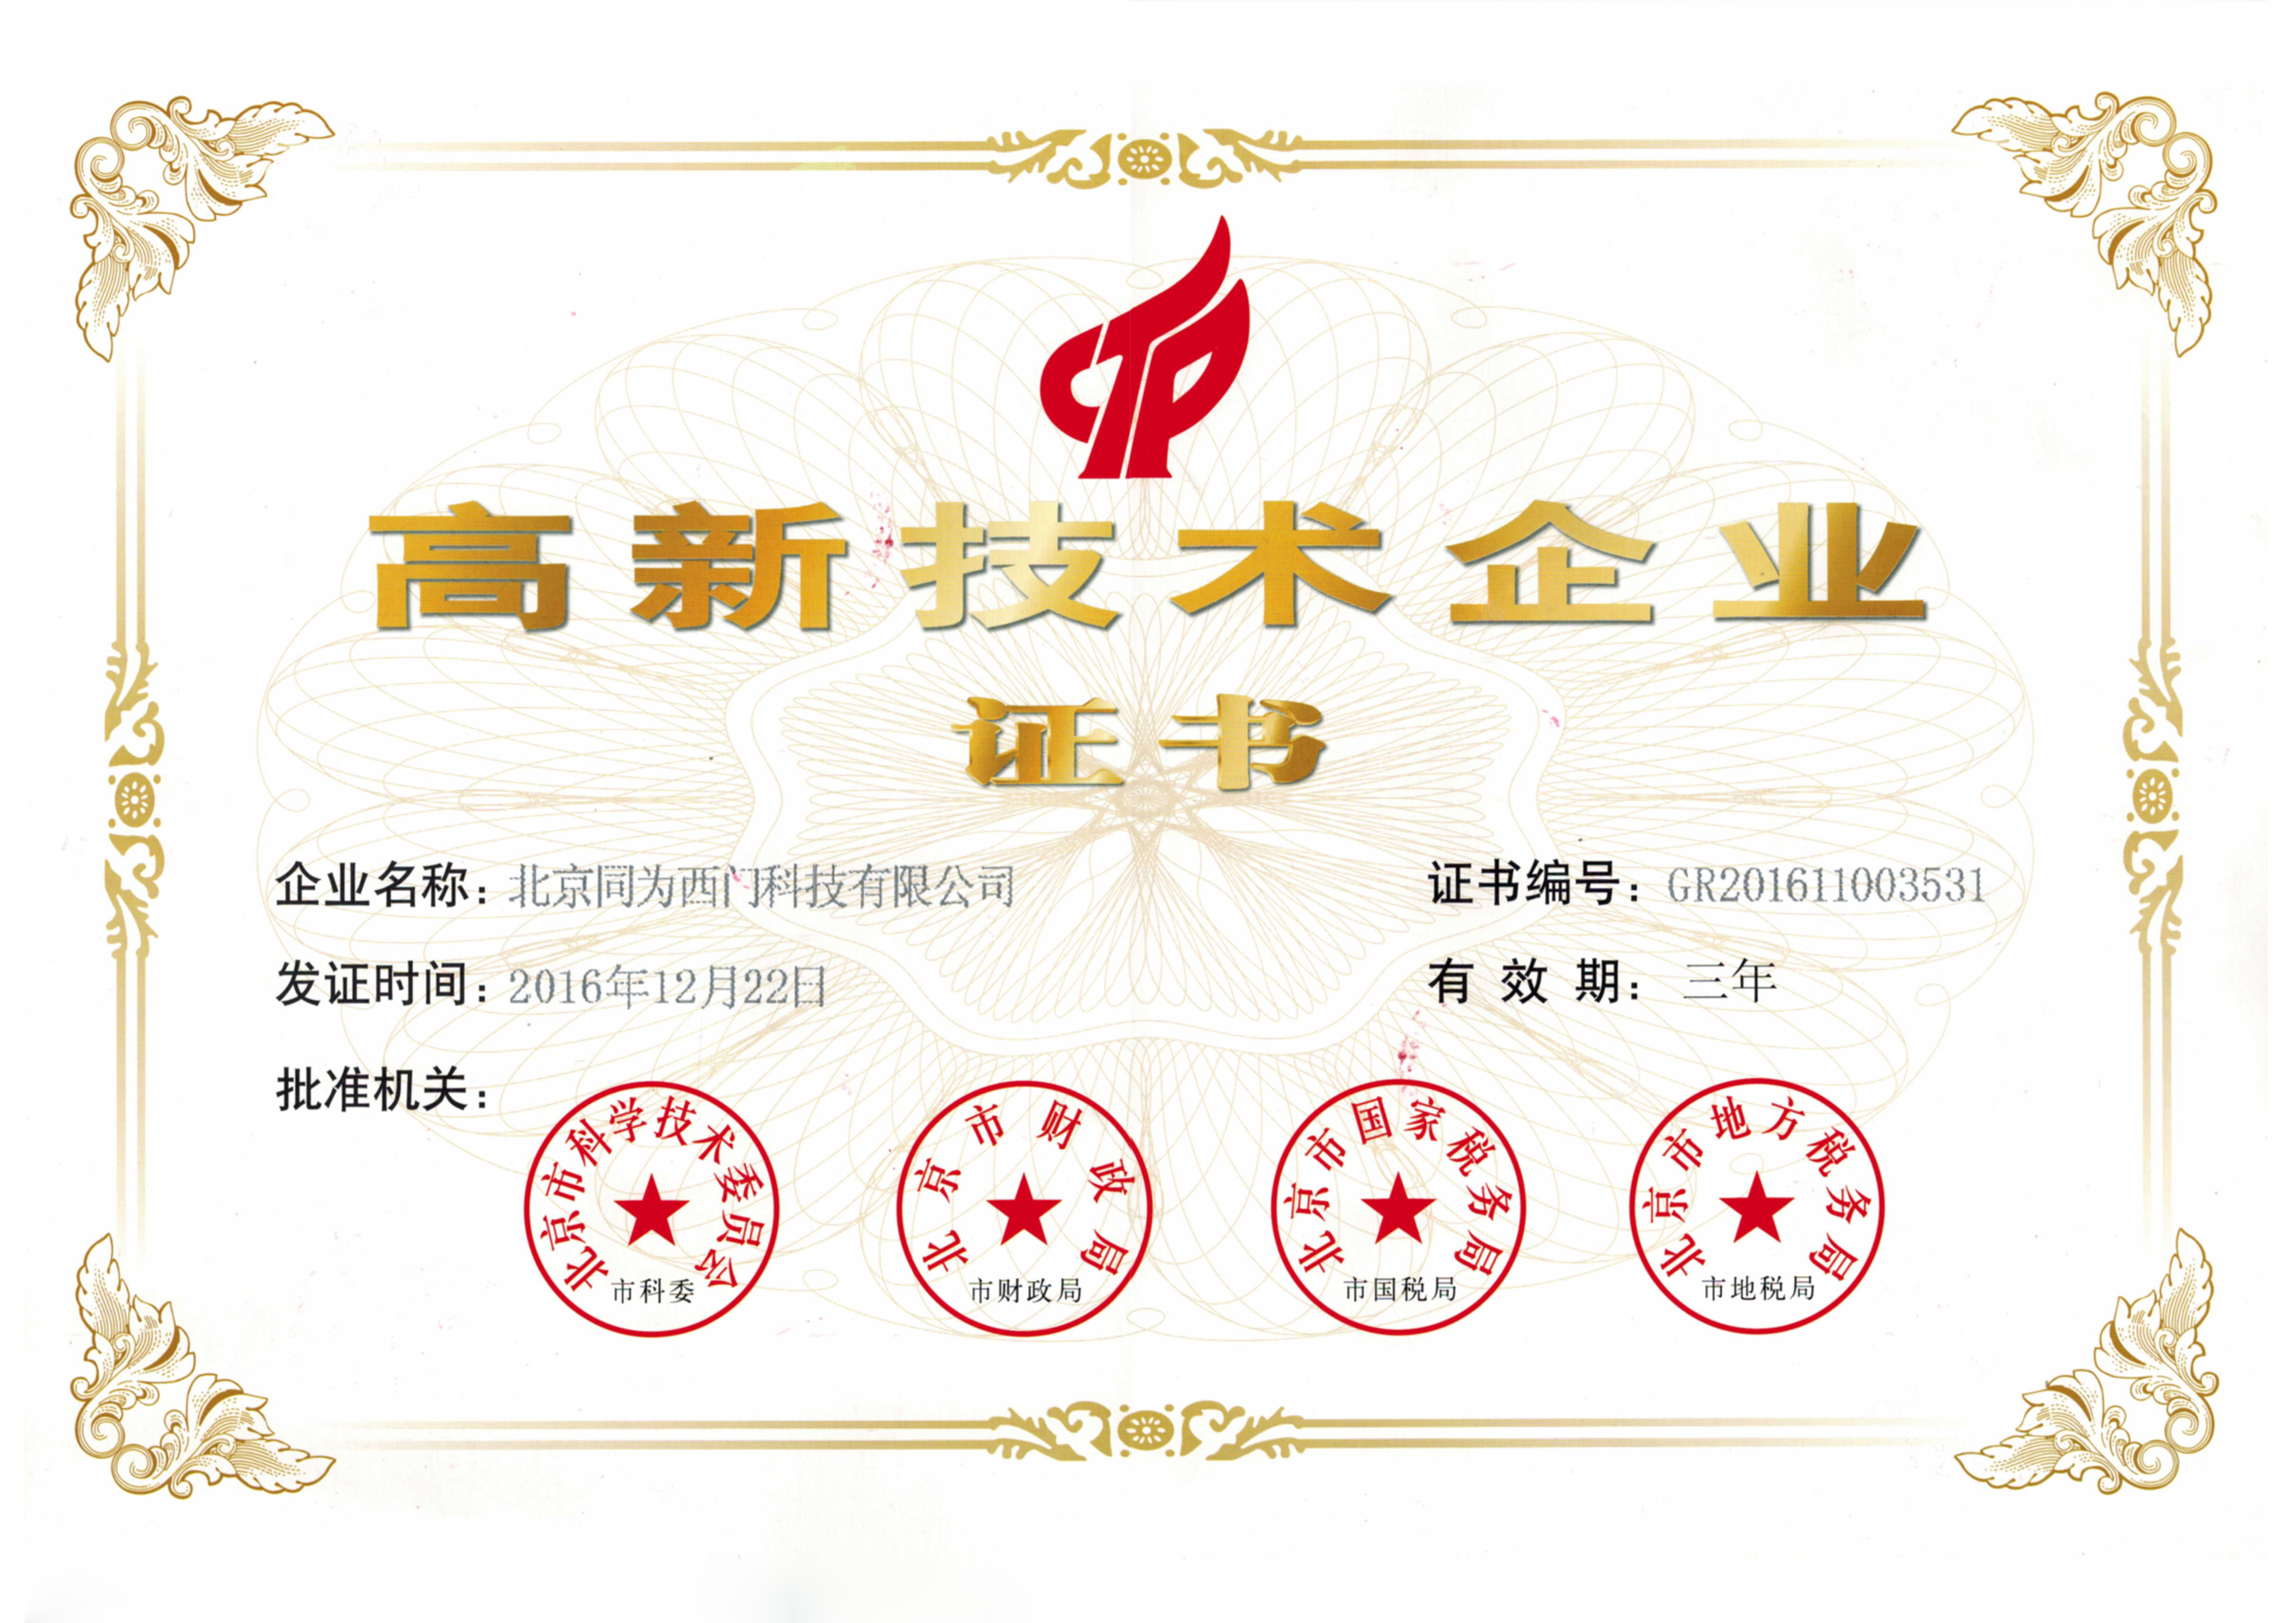 北京同为西门高新技术企业证书